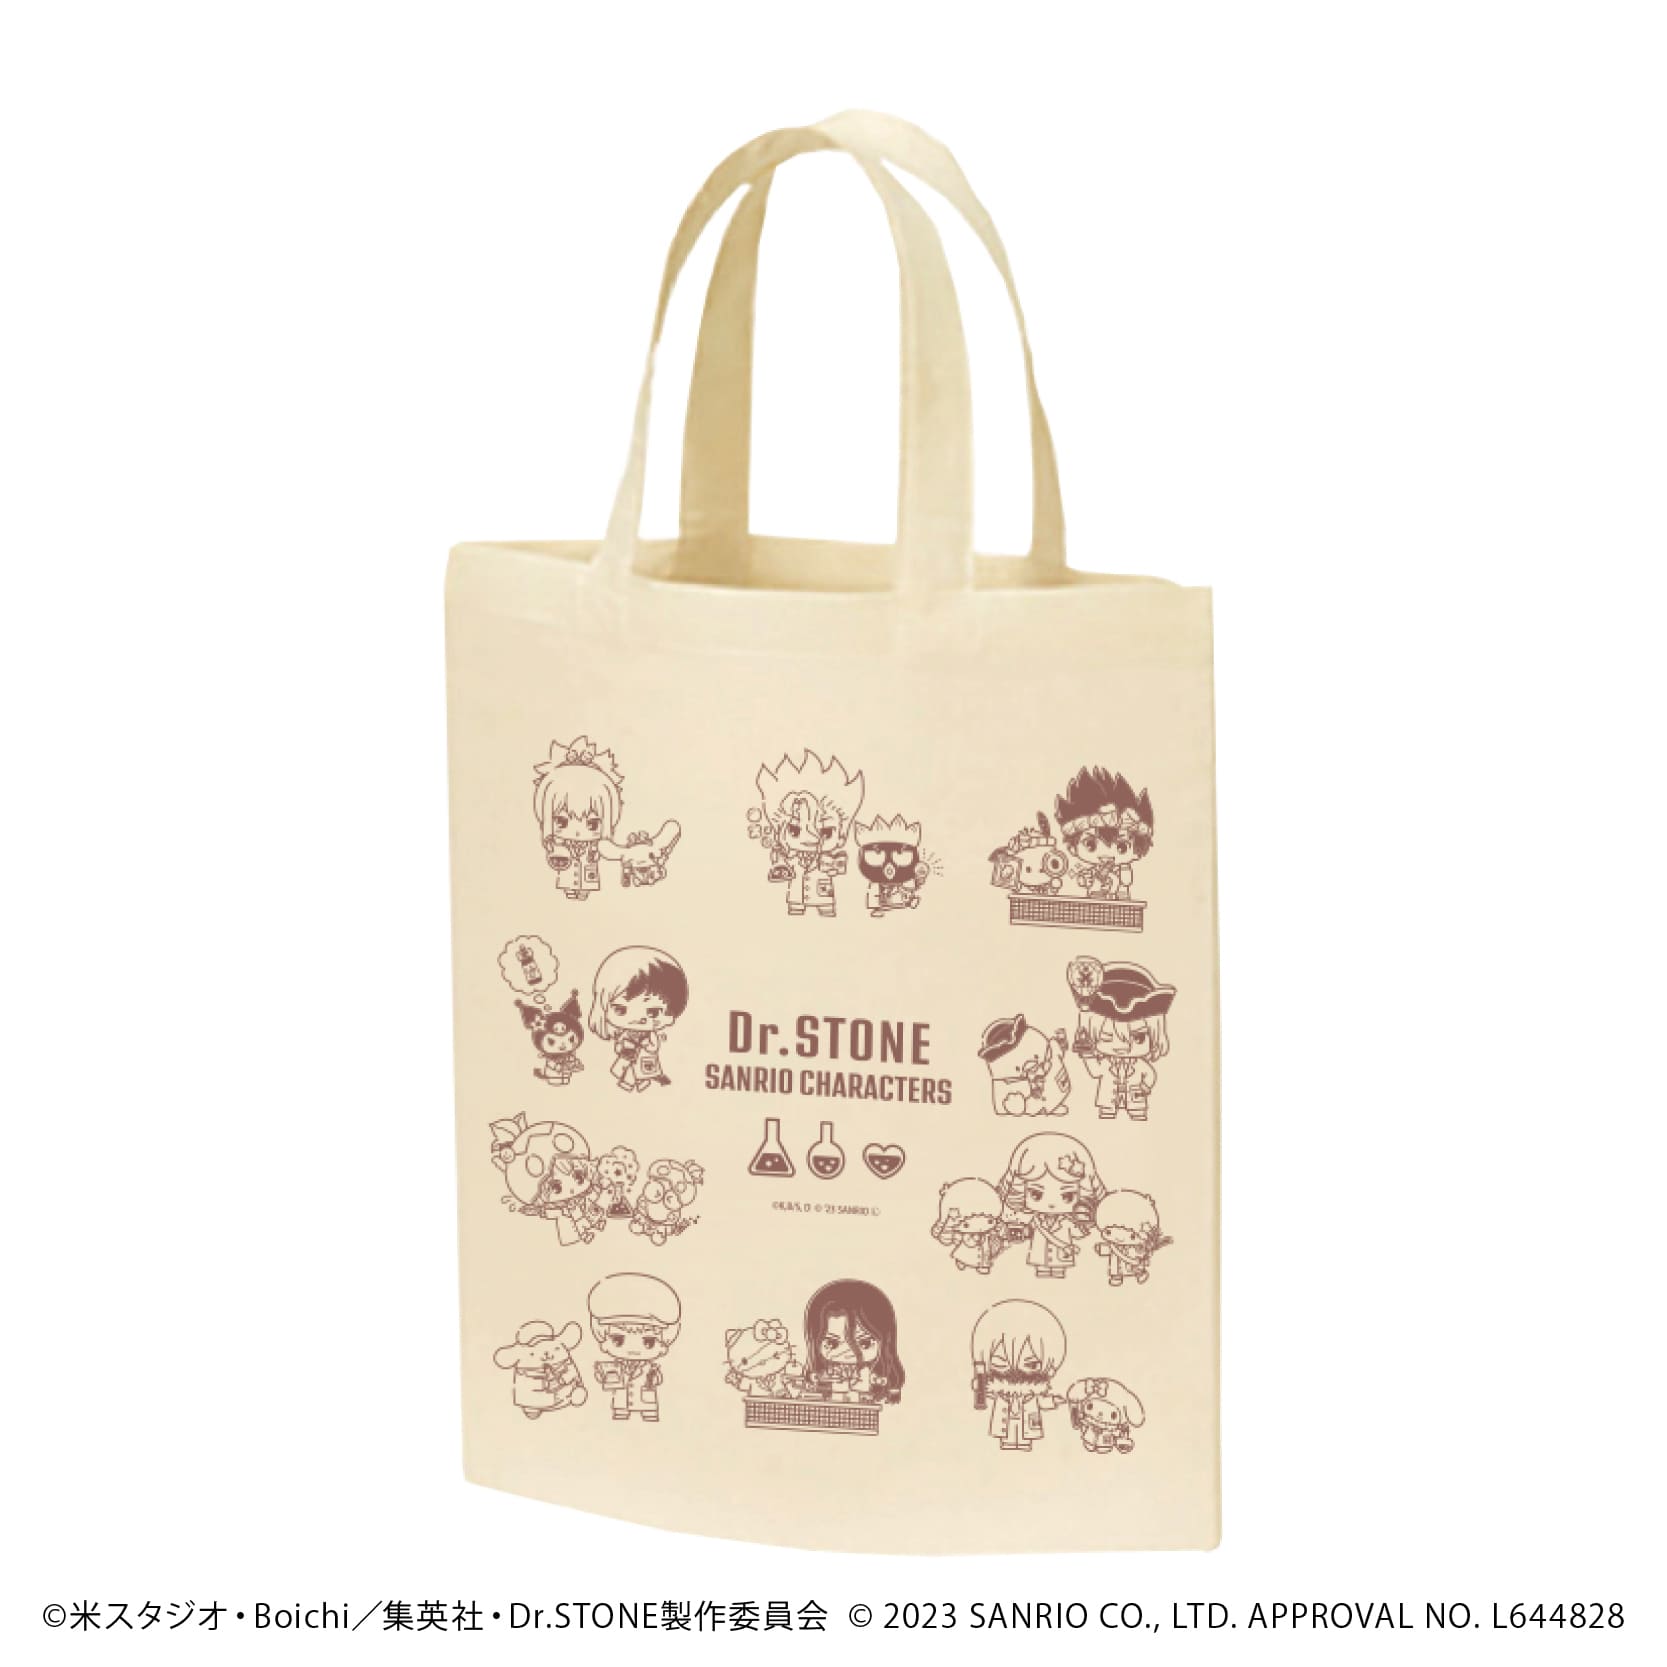 キャラトートバッグ「Dr.STONE×サンリオキャラクターズ」01/集合デザイン(ミニキャライラスト)